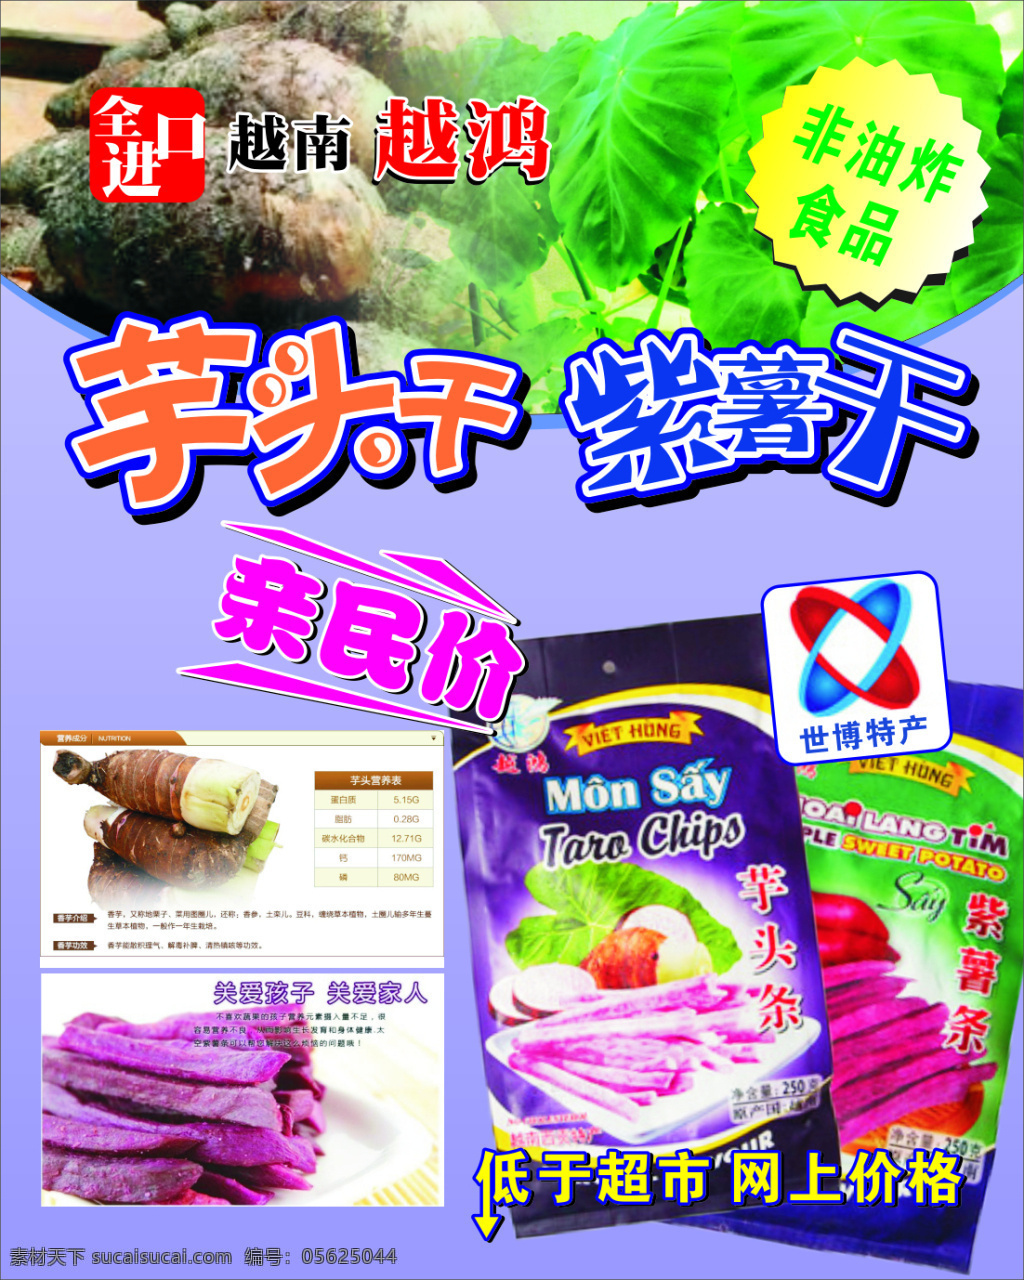 芋头干海报 海报 芋头 进口 食品 展板 紫薯 绿色